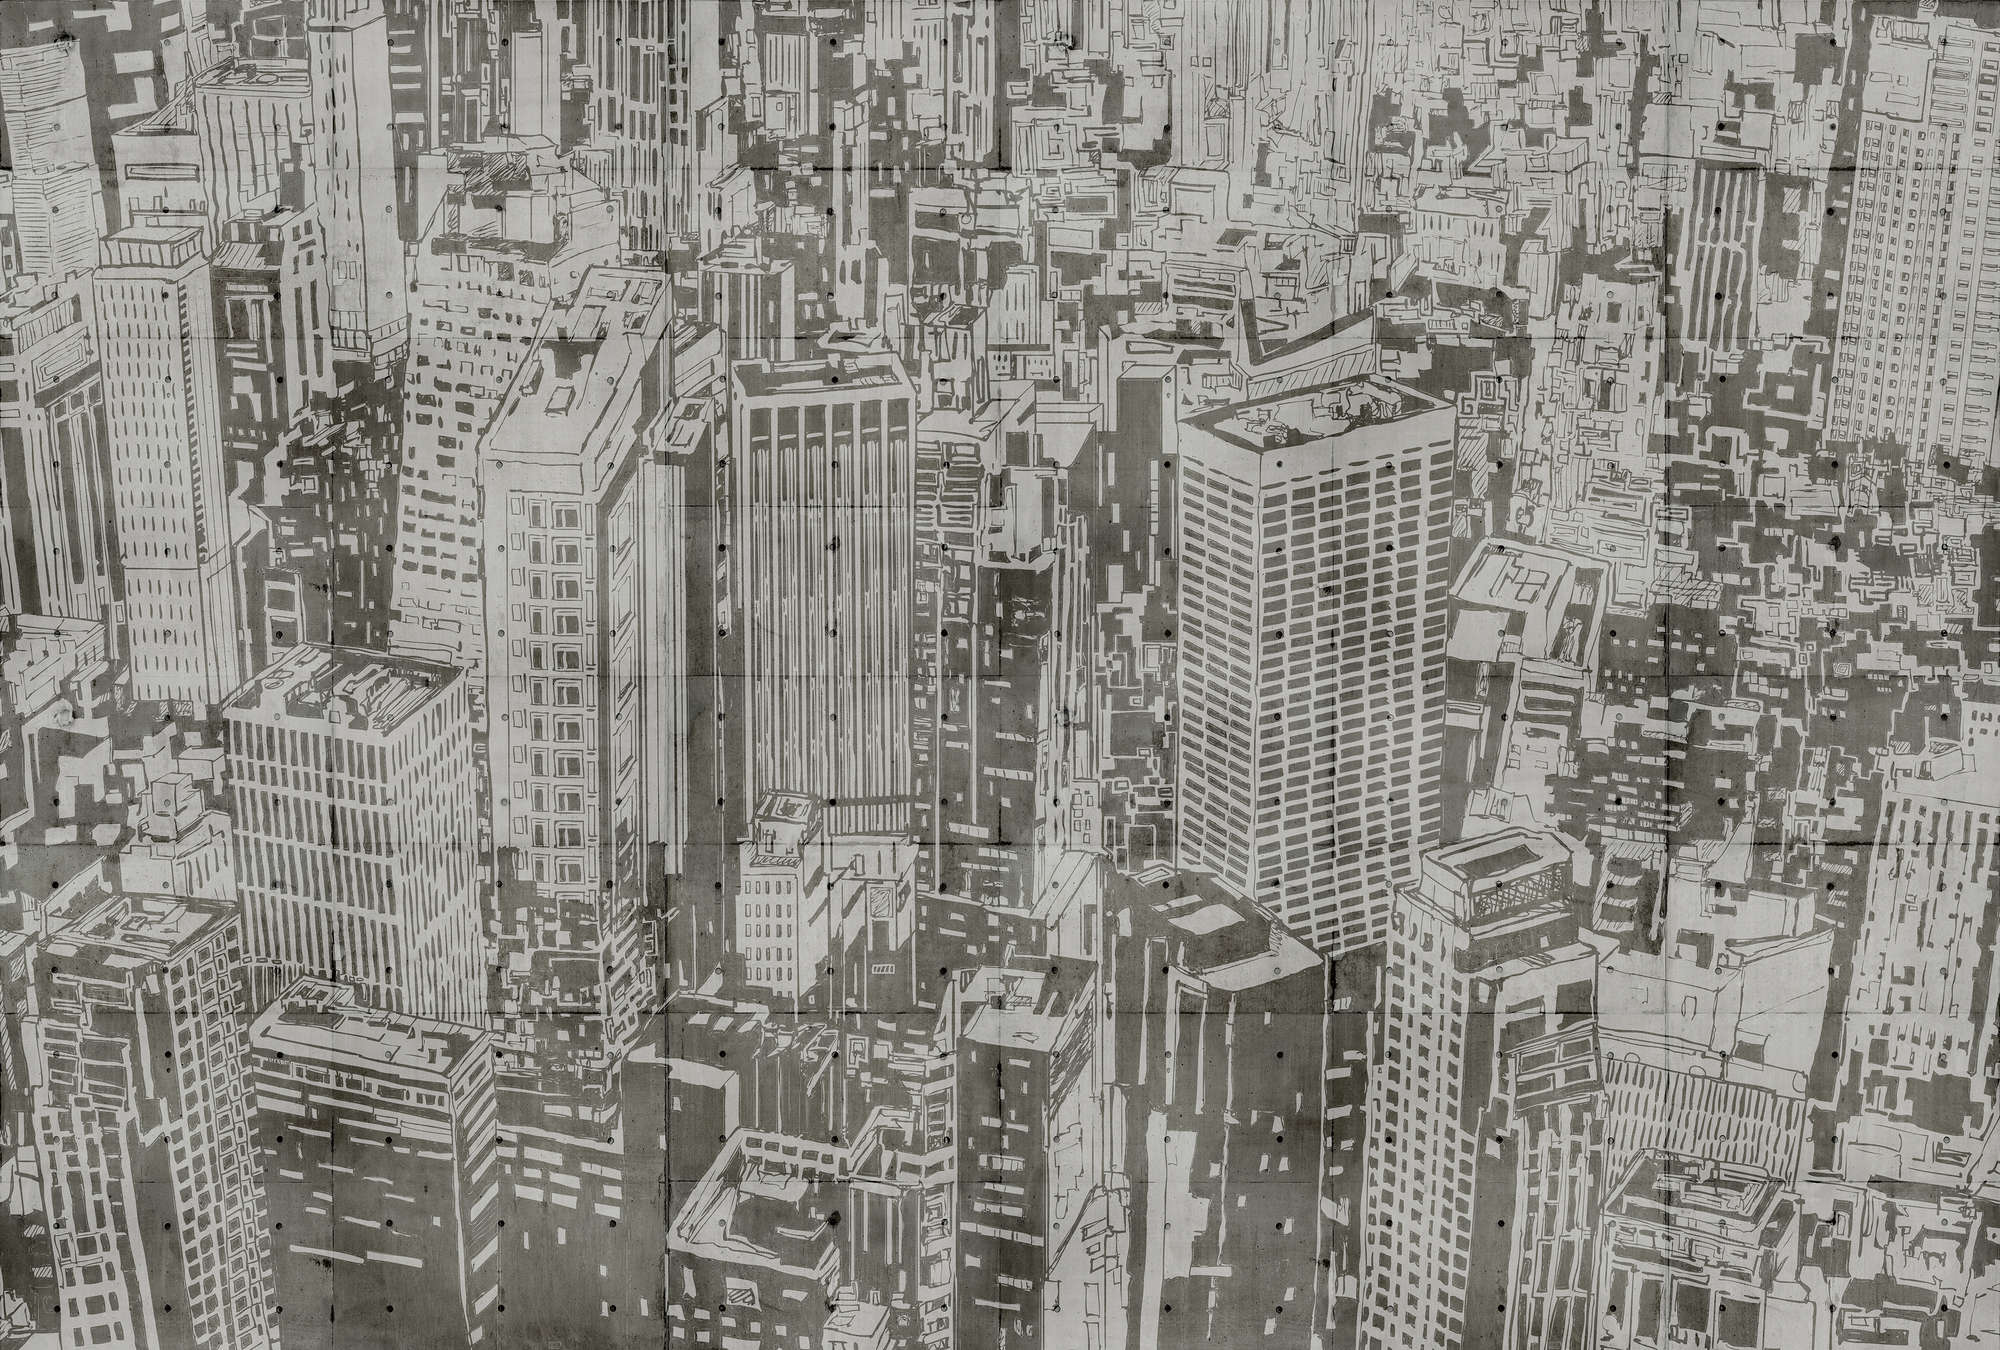             Downtown 2 - Betonstructuur behang in New York look - Beige, Bruin | Strukturenvlies
        